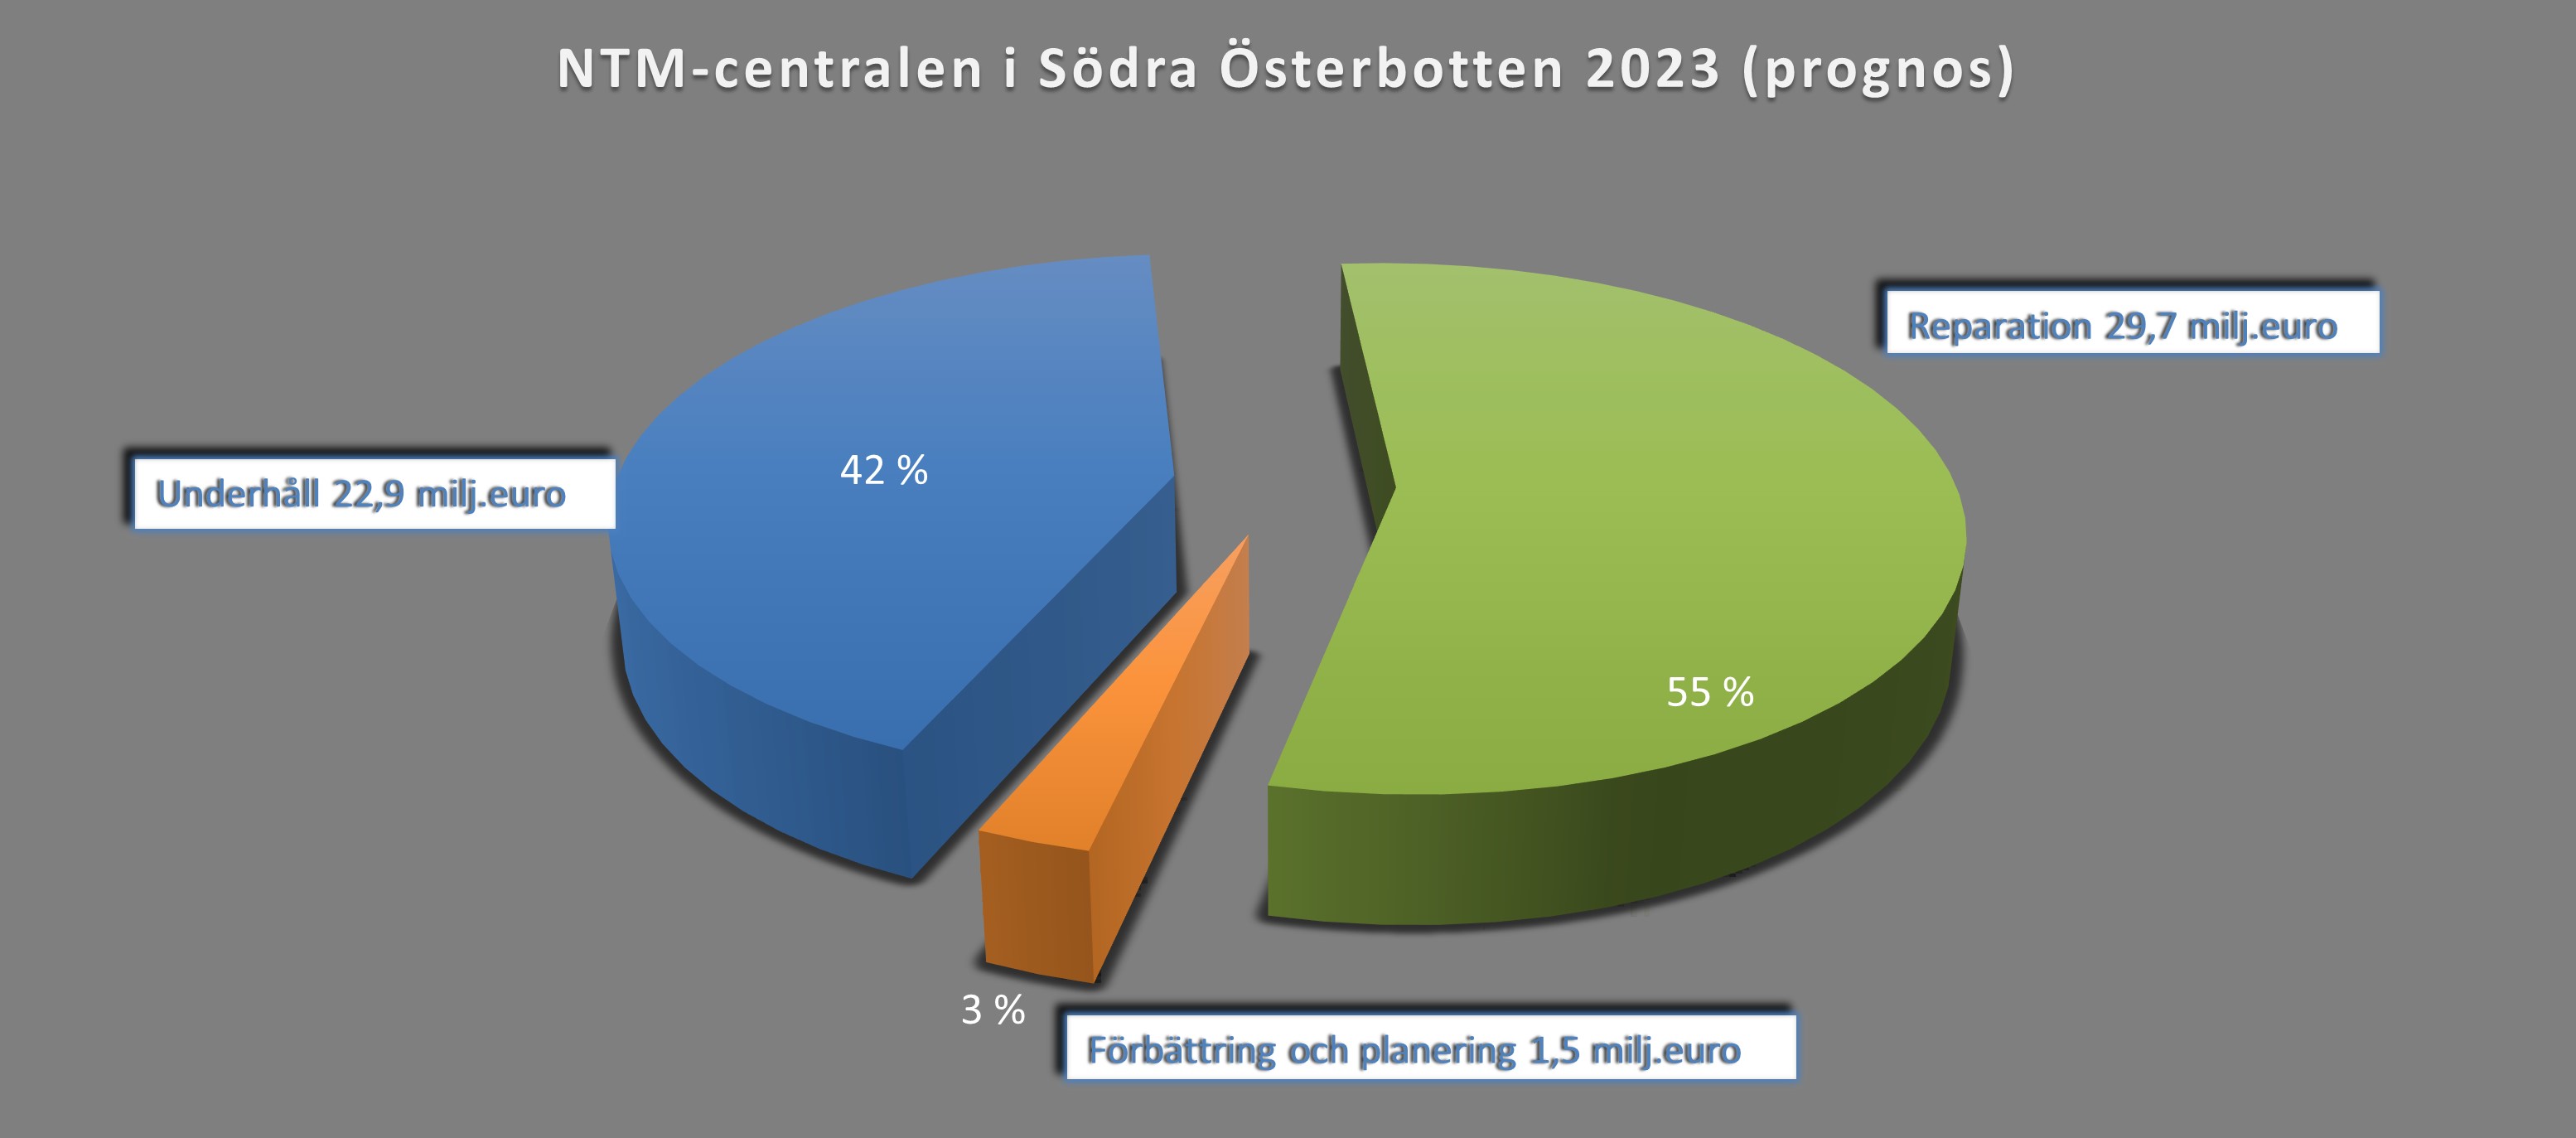 Bild 9. NTM-centralen i Södra Österbottens anslag år 2023 (miljoner euro) . Reparation 29,7 milj. euro, 55 %. Underhåll 22,9 milj. euro, 42 %.  Förbättring och planering 1,5 milj. euro, 3 %